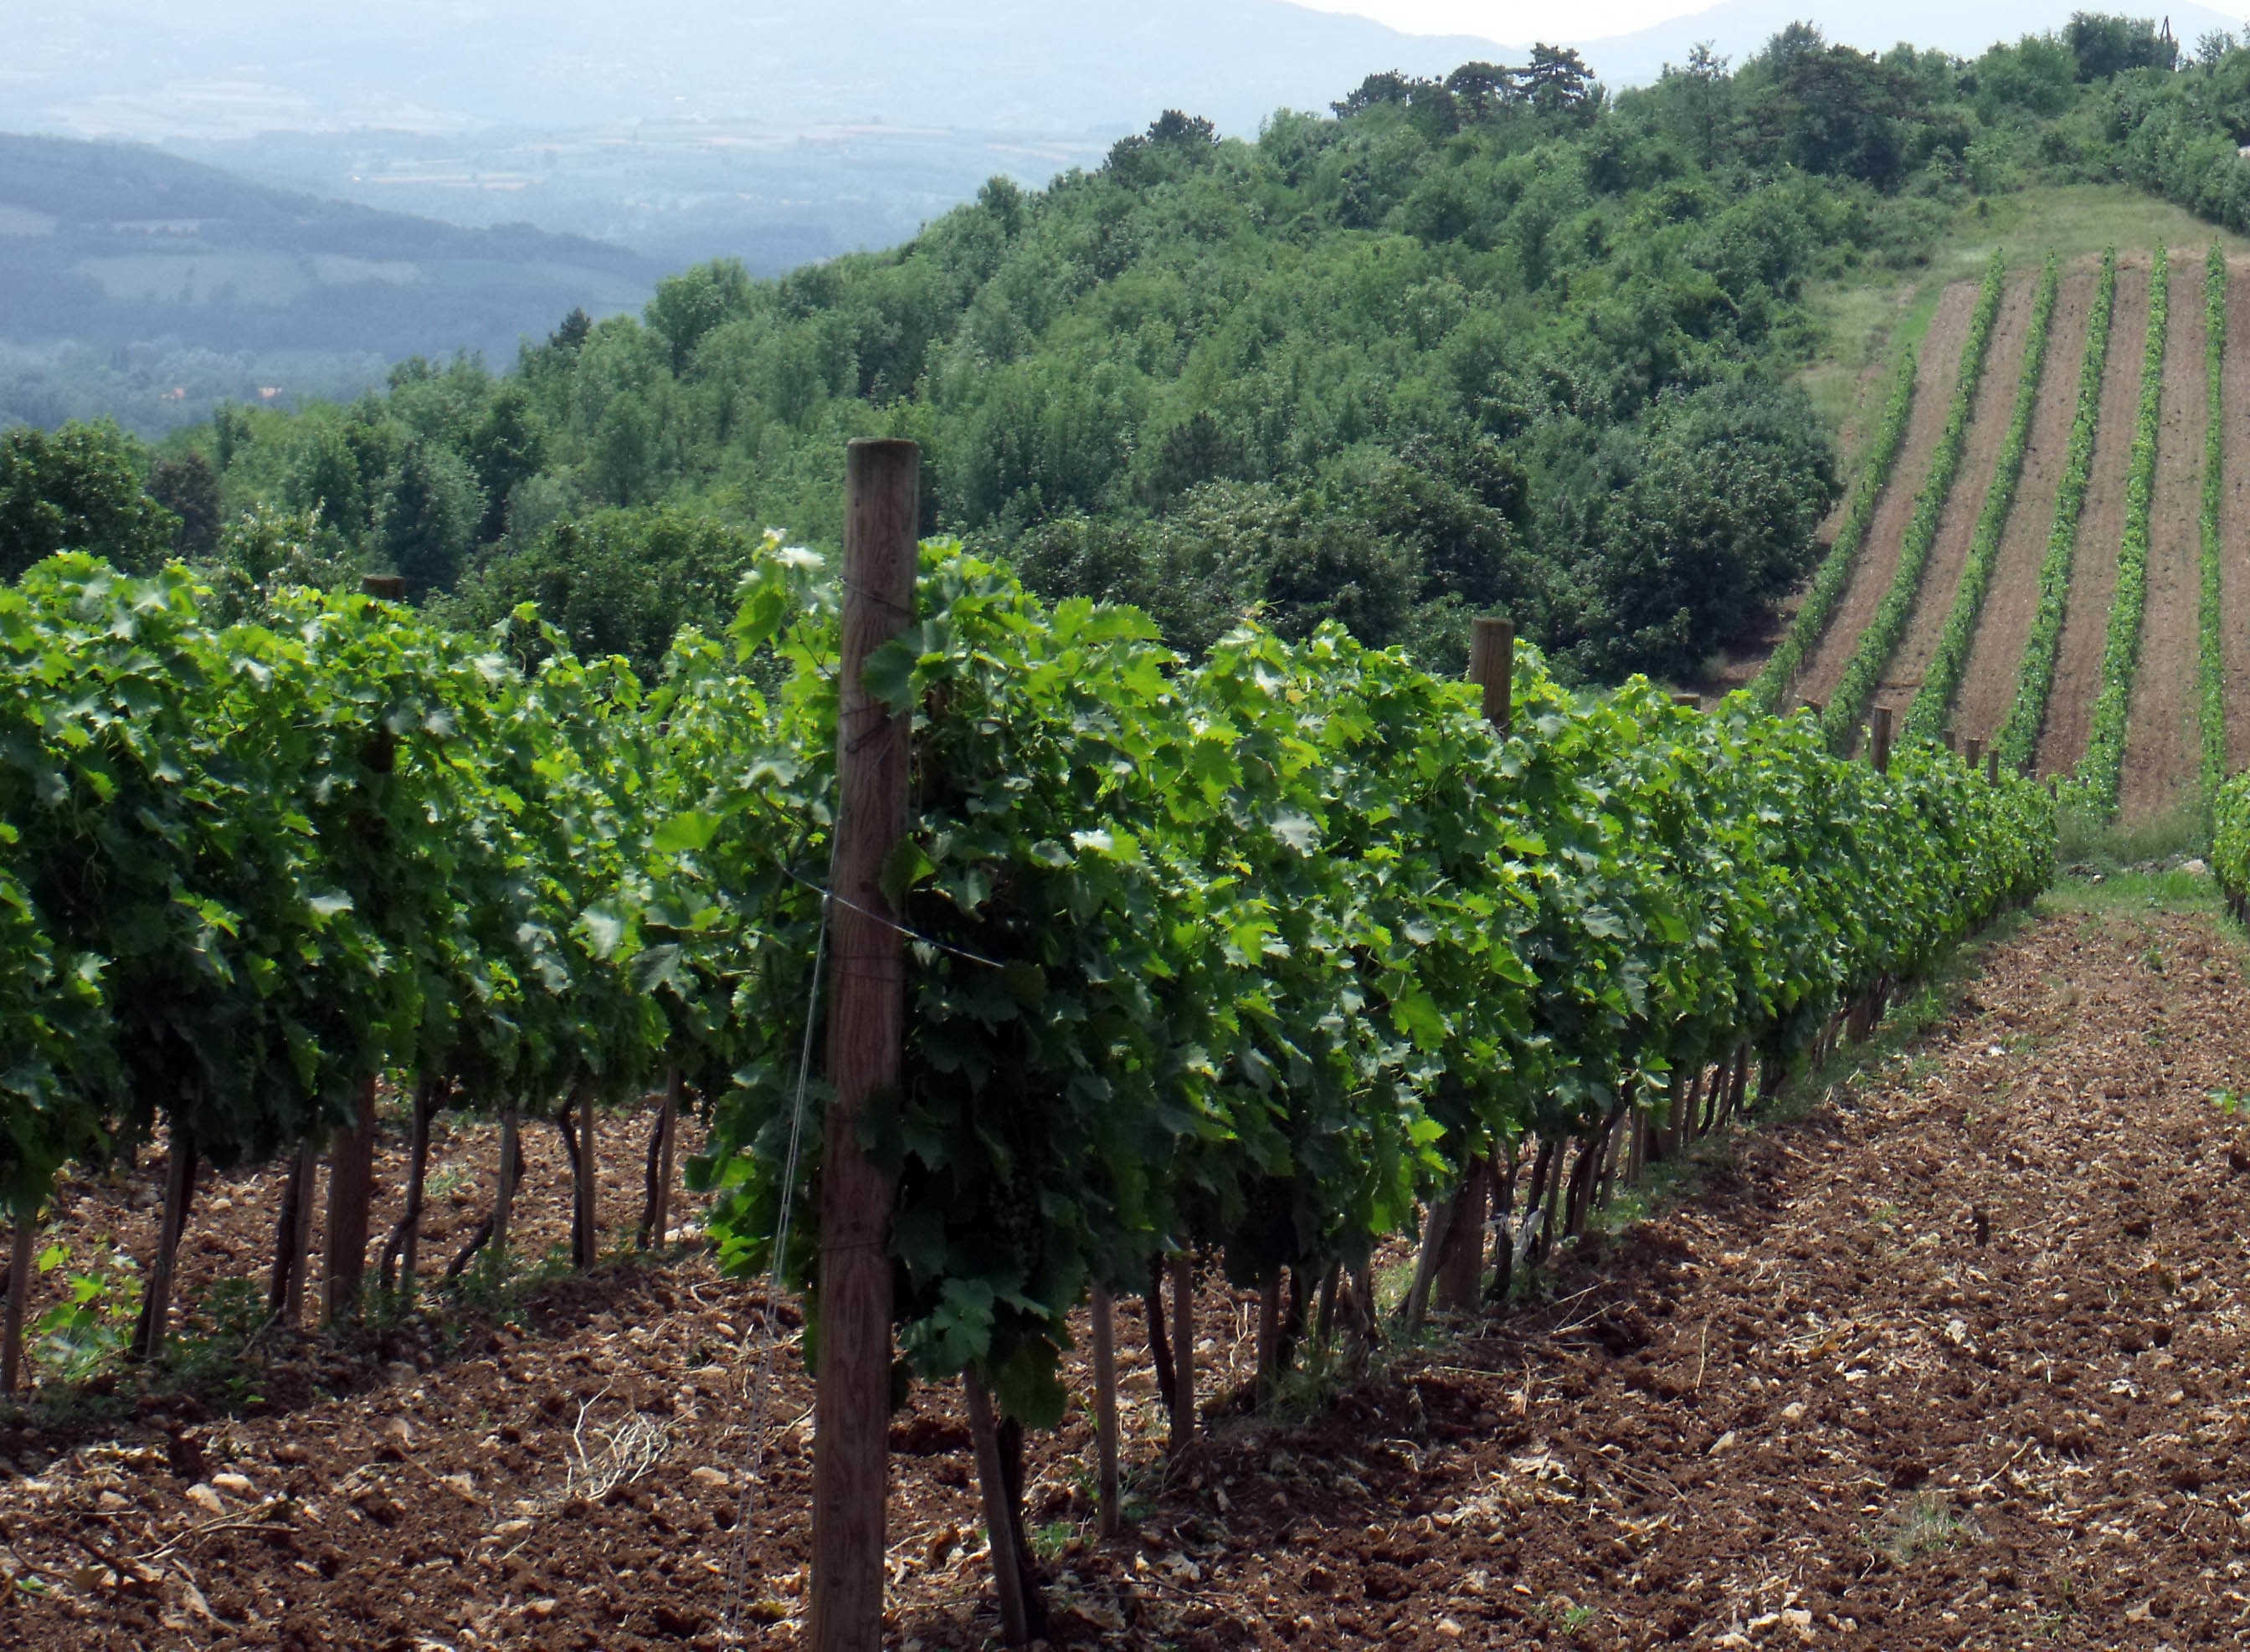 Kraljevi vinogradi u Topoli